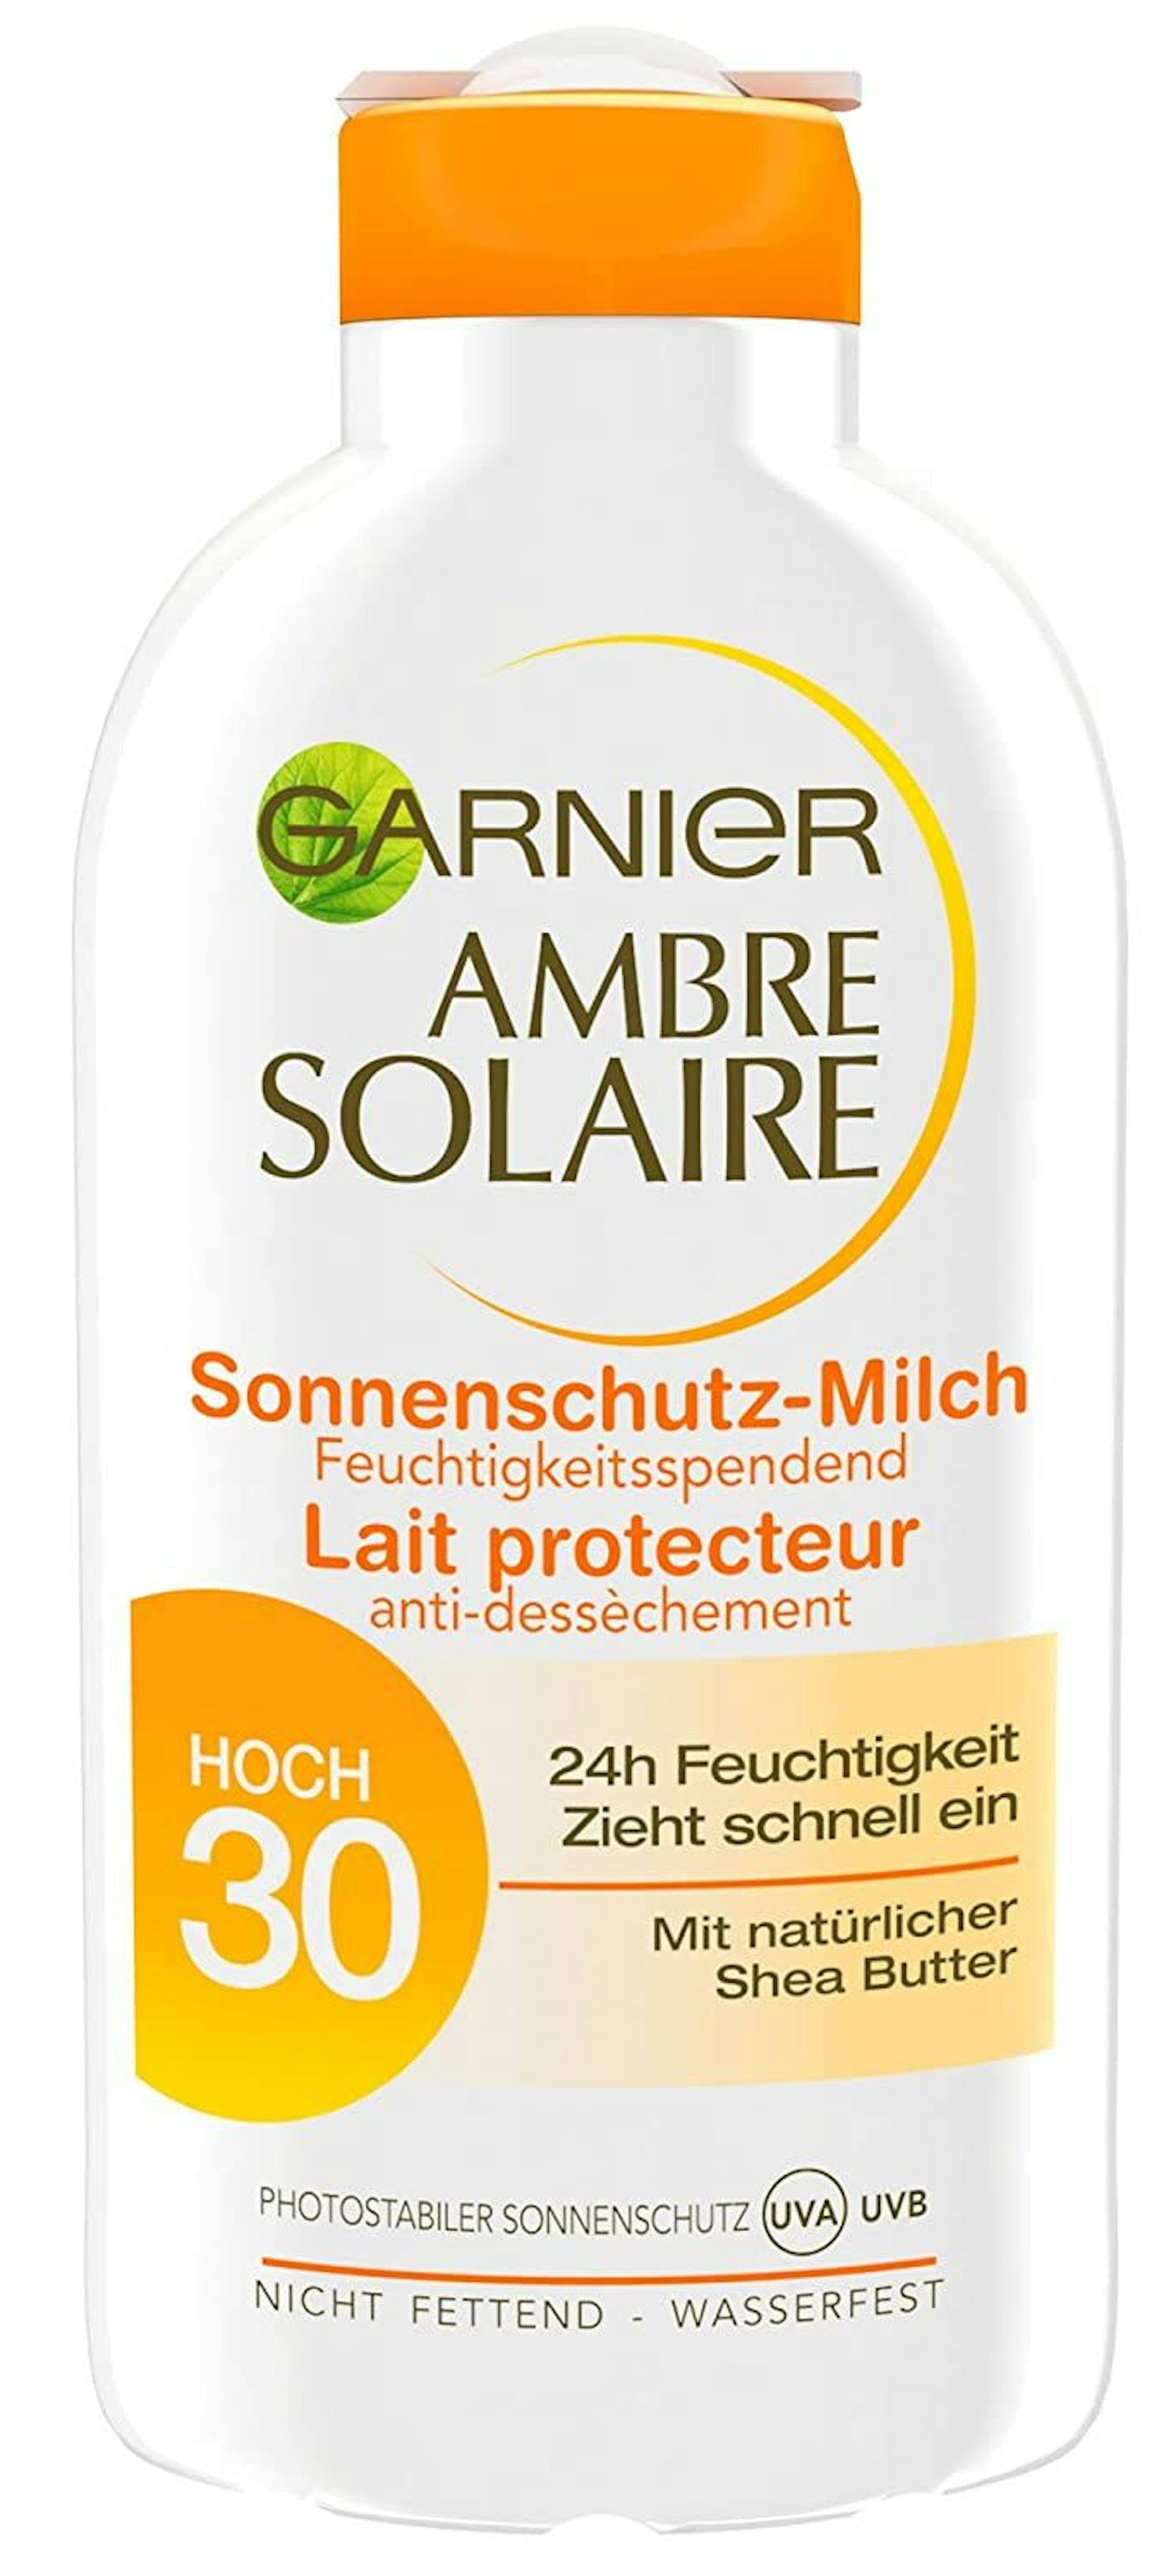 Die Sonnencreme "Garnier Ambre Solaire Sonnenschutz Milch 30" fiel wegen halogenorganischer Verbindungen, die als allergieauslösend gelten und schwer abbaubarer Kunststoffe durch.